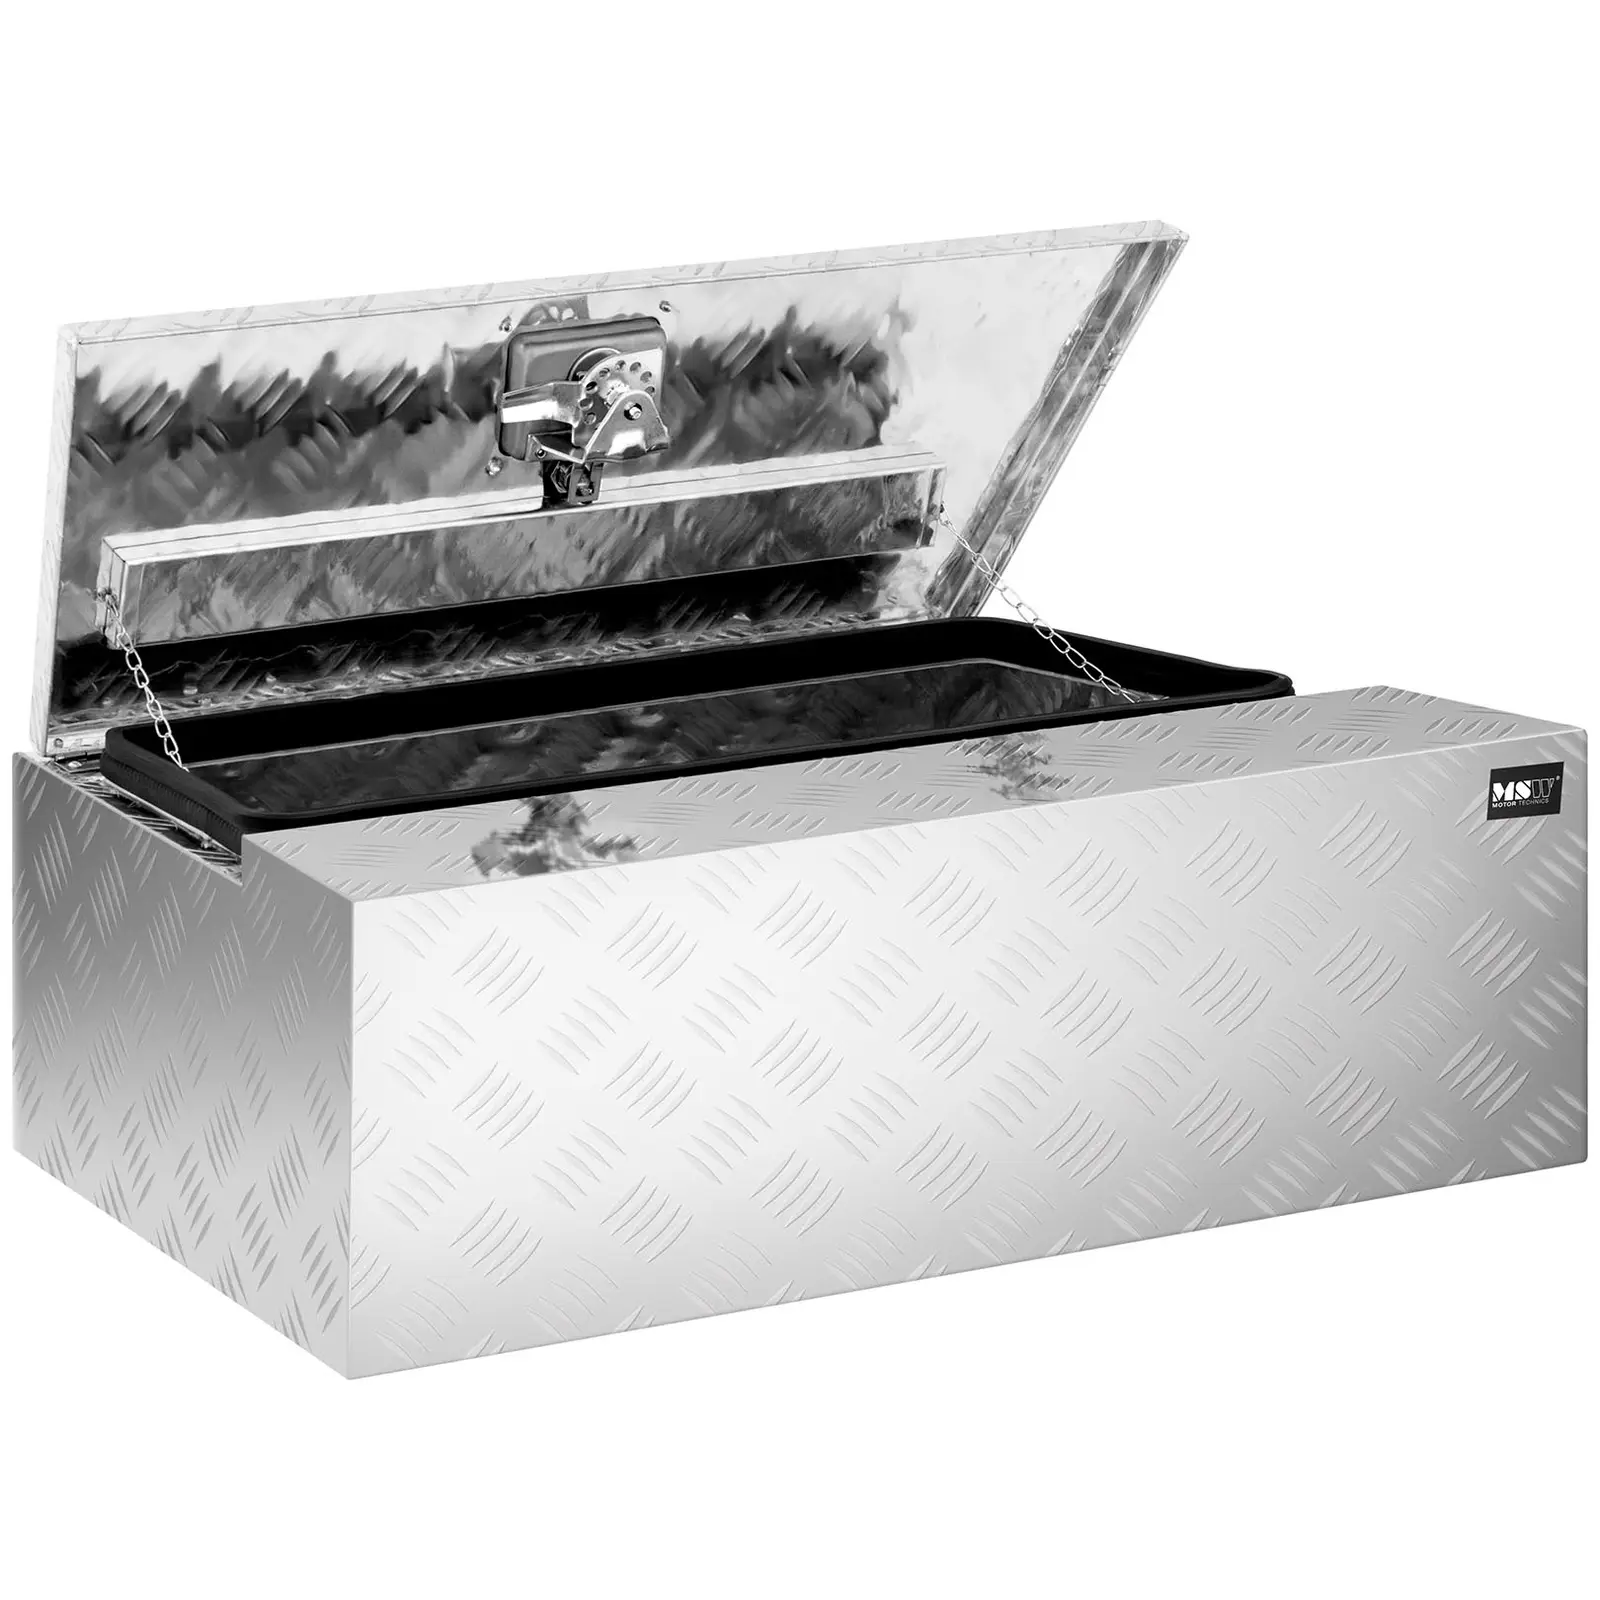 Caja de herramientas de aluminio - chapa corrugada - 75 x 25 x 40 cm - 75 L - con cerradura